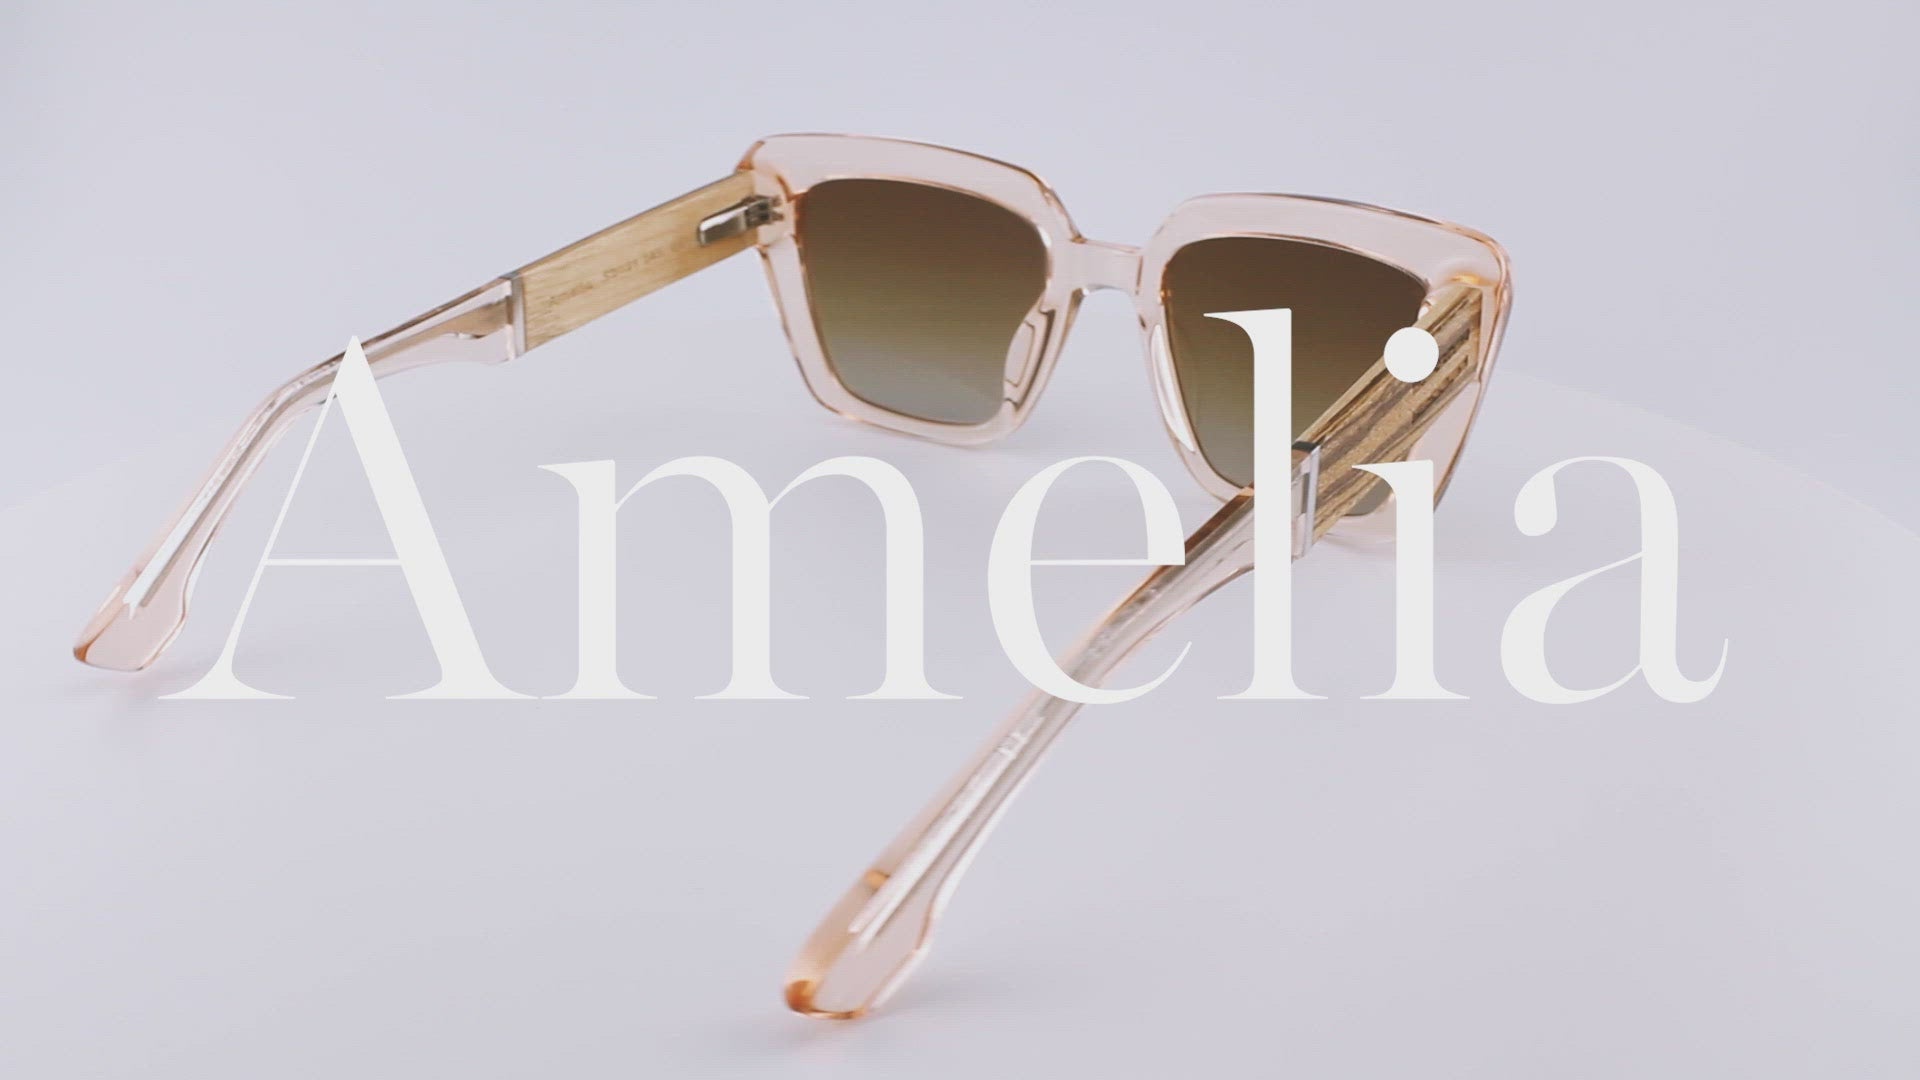 Amelia - Acetate & Wood Sunglasses